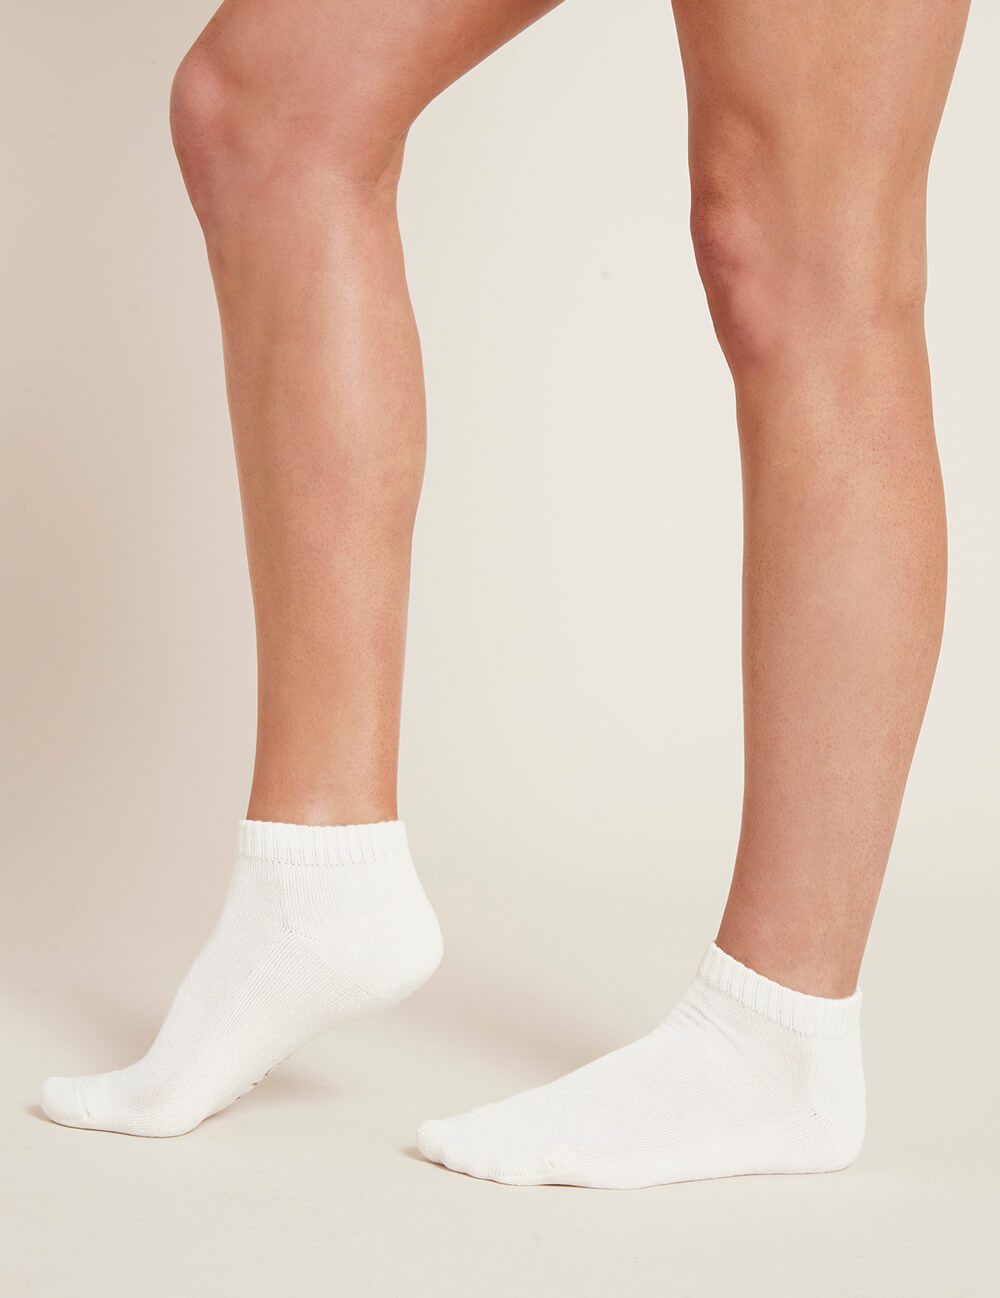 Socks Women Ankle White